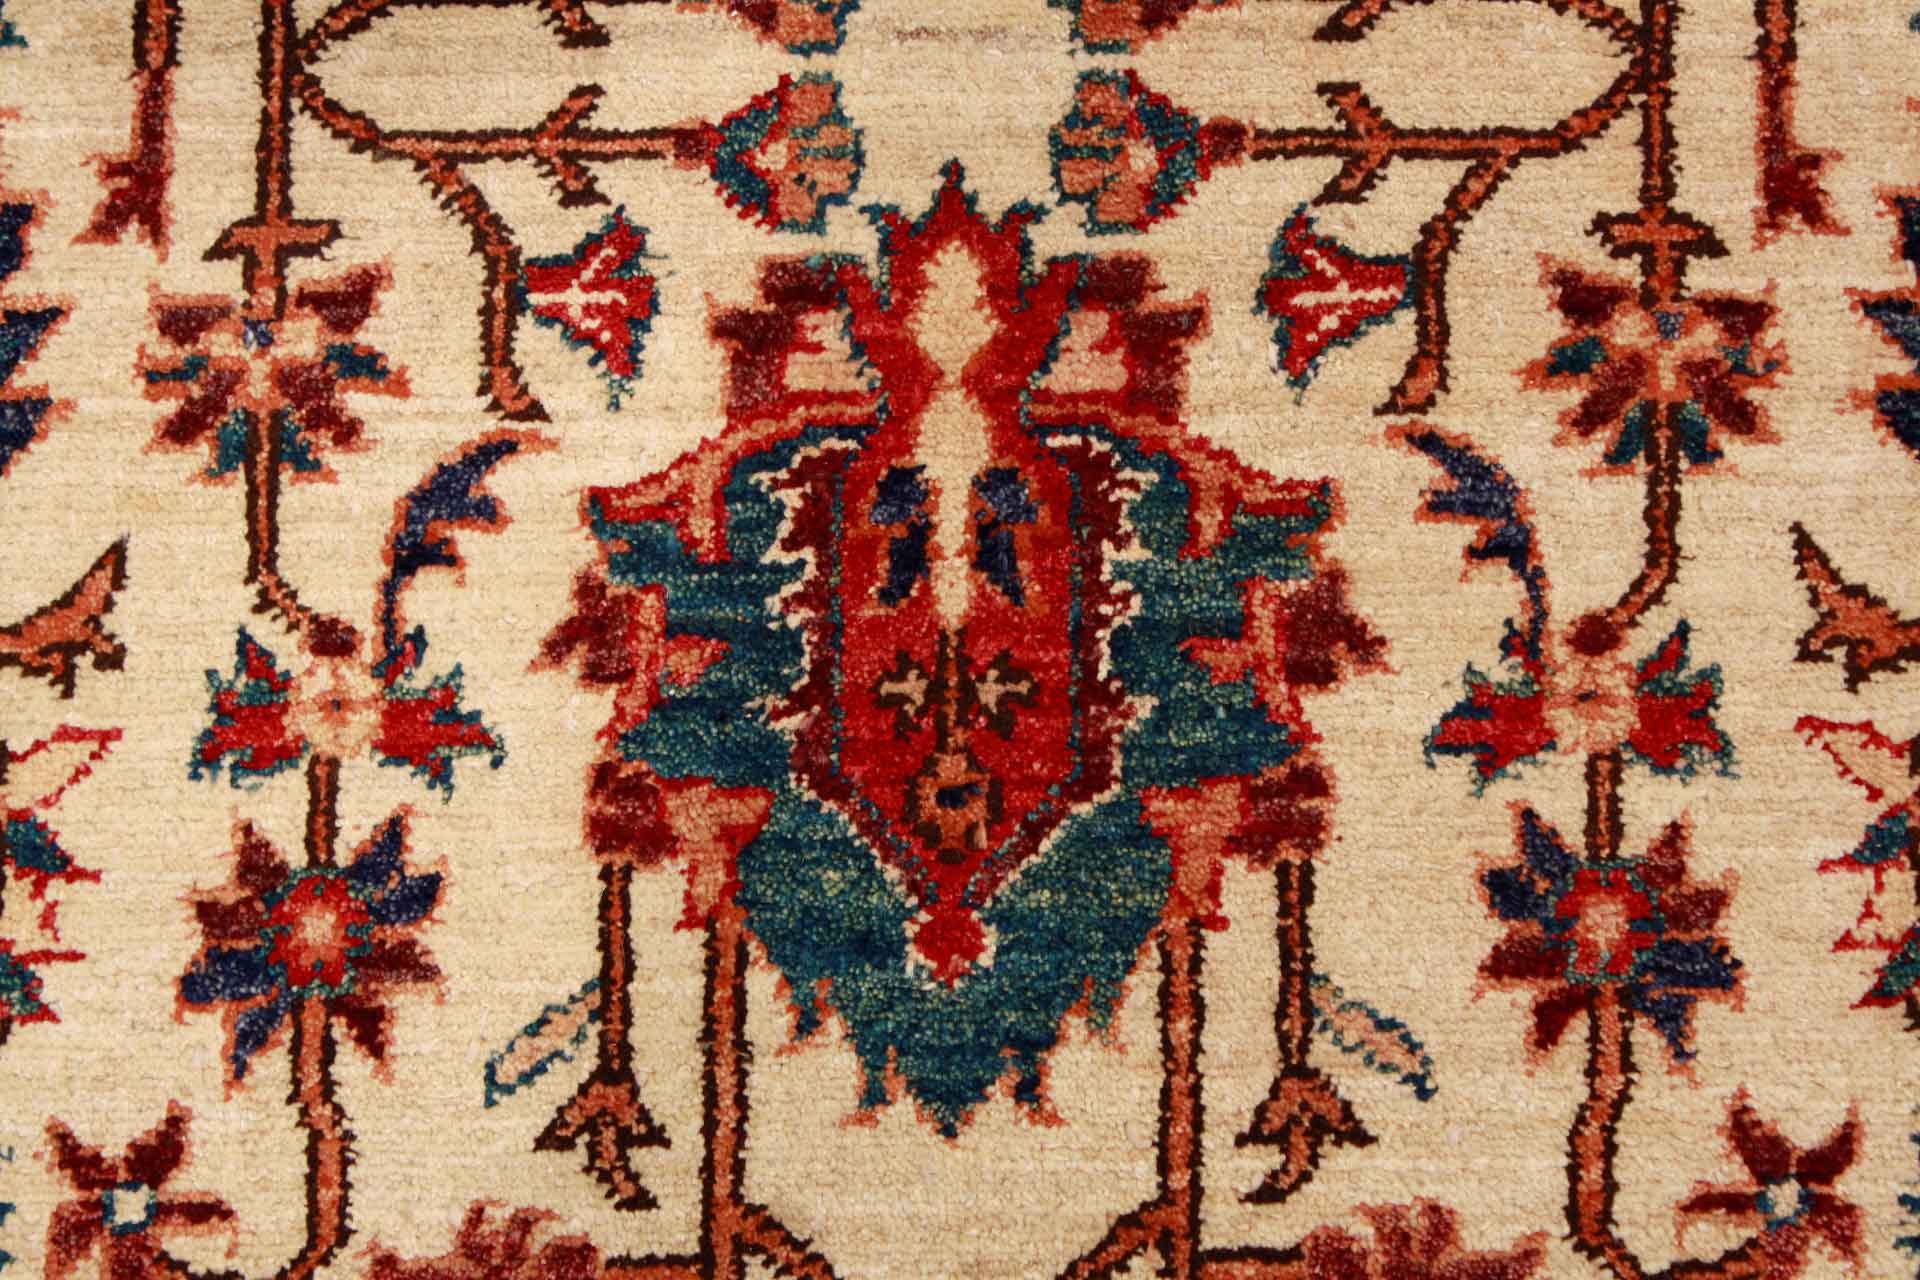 Orientální koberec Ziegler Ariana Royal